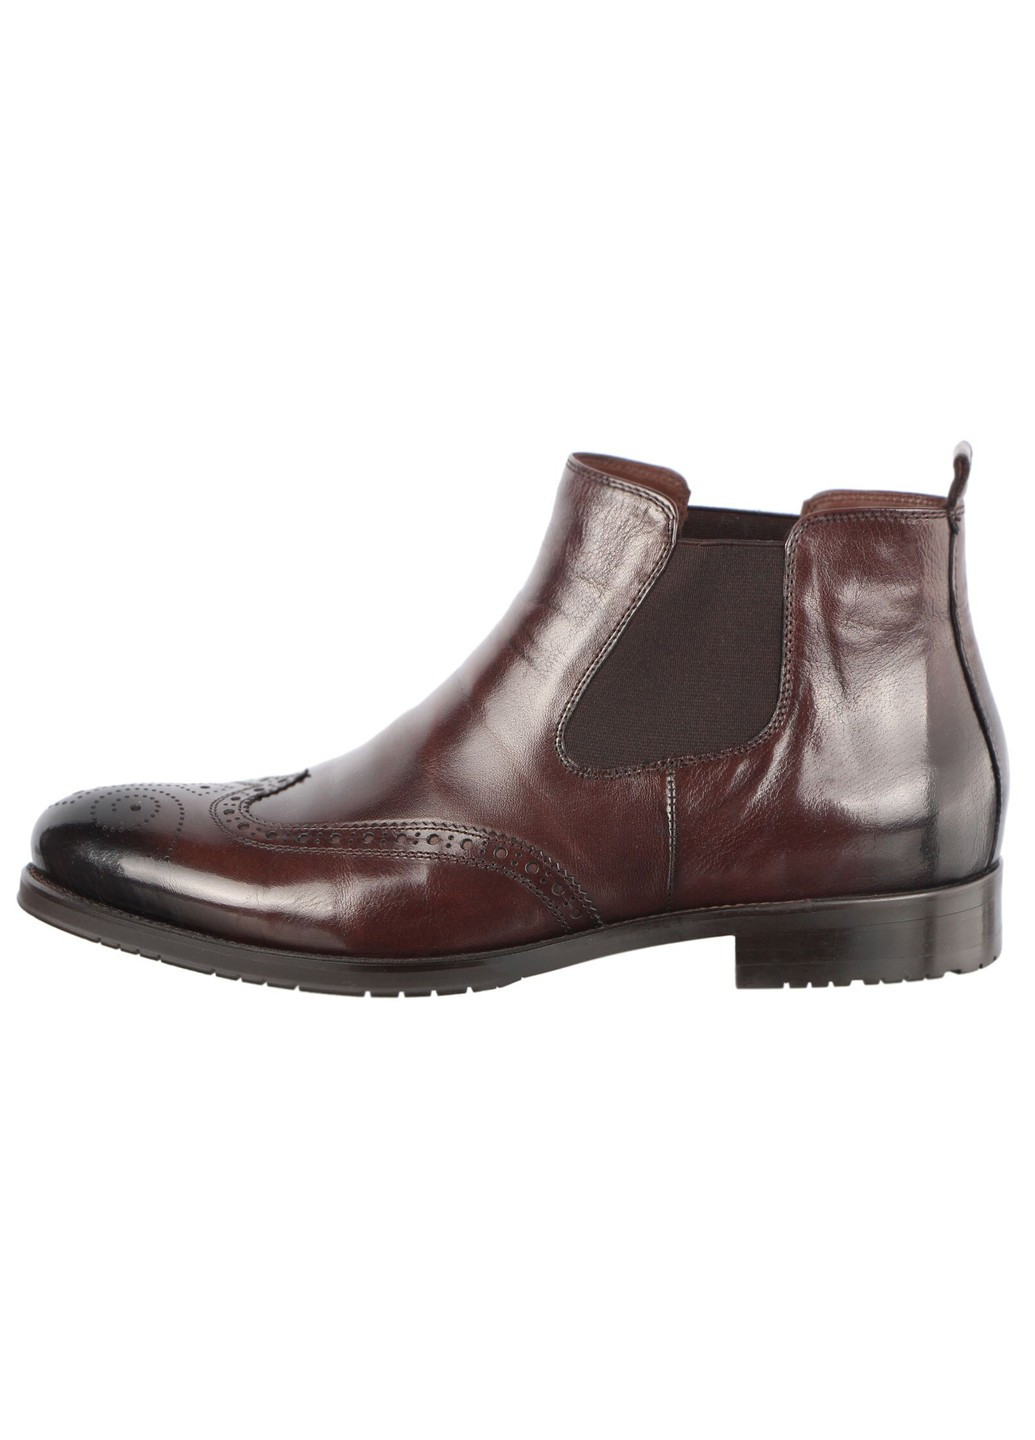 Коричневые осенние мужские ботинки классические 50882 Lido Marinozzi